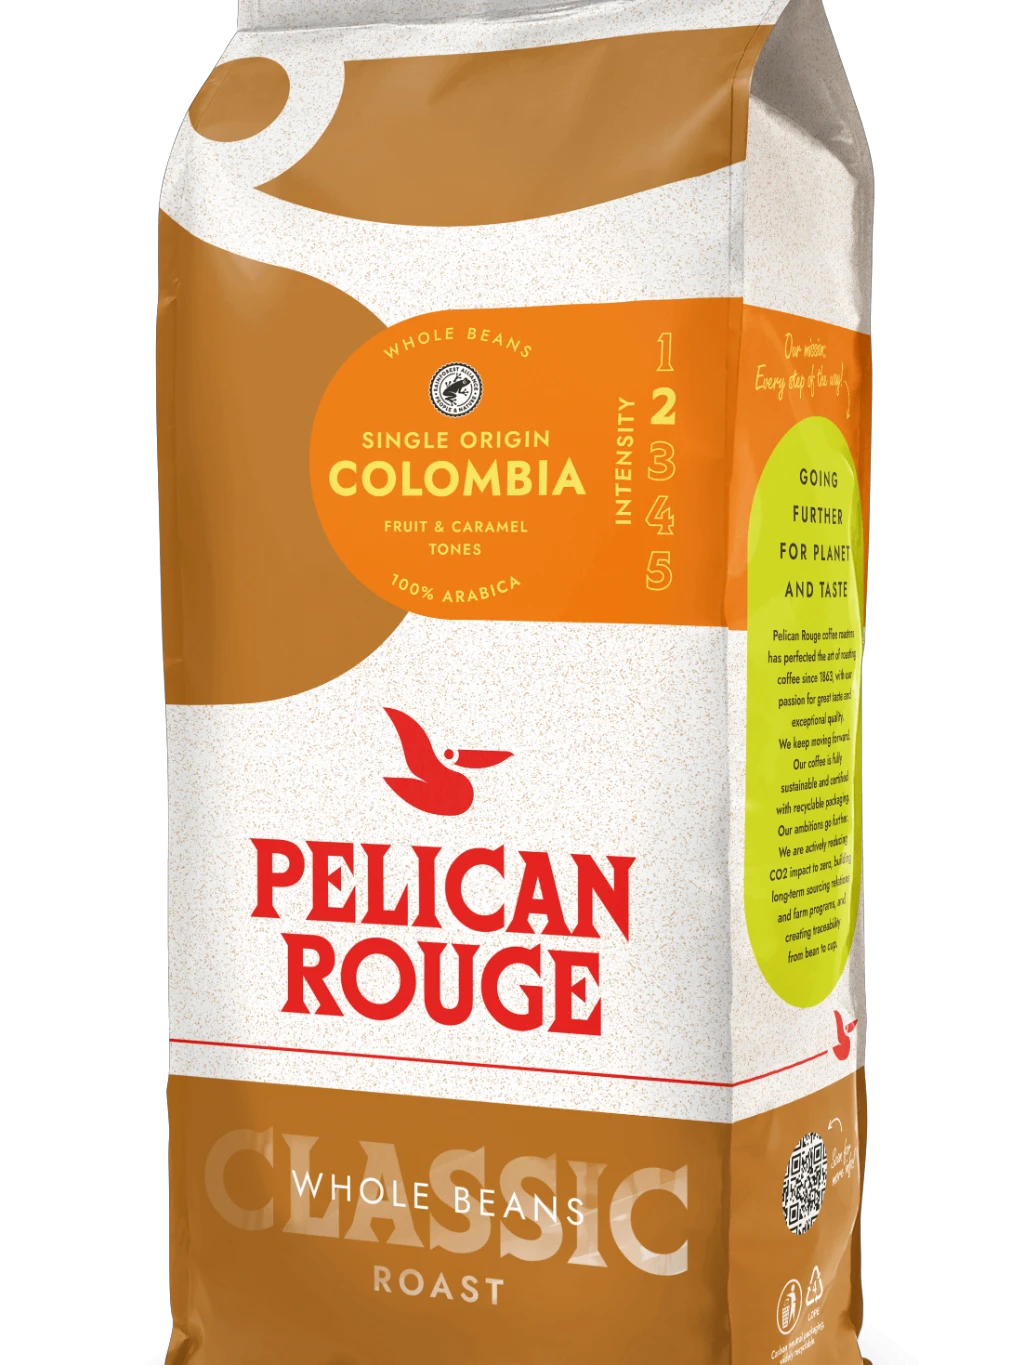 Packshot PR Beans Colombia RFA 333.40.1150.86x Left_LR.png